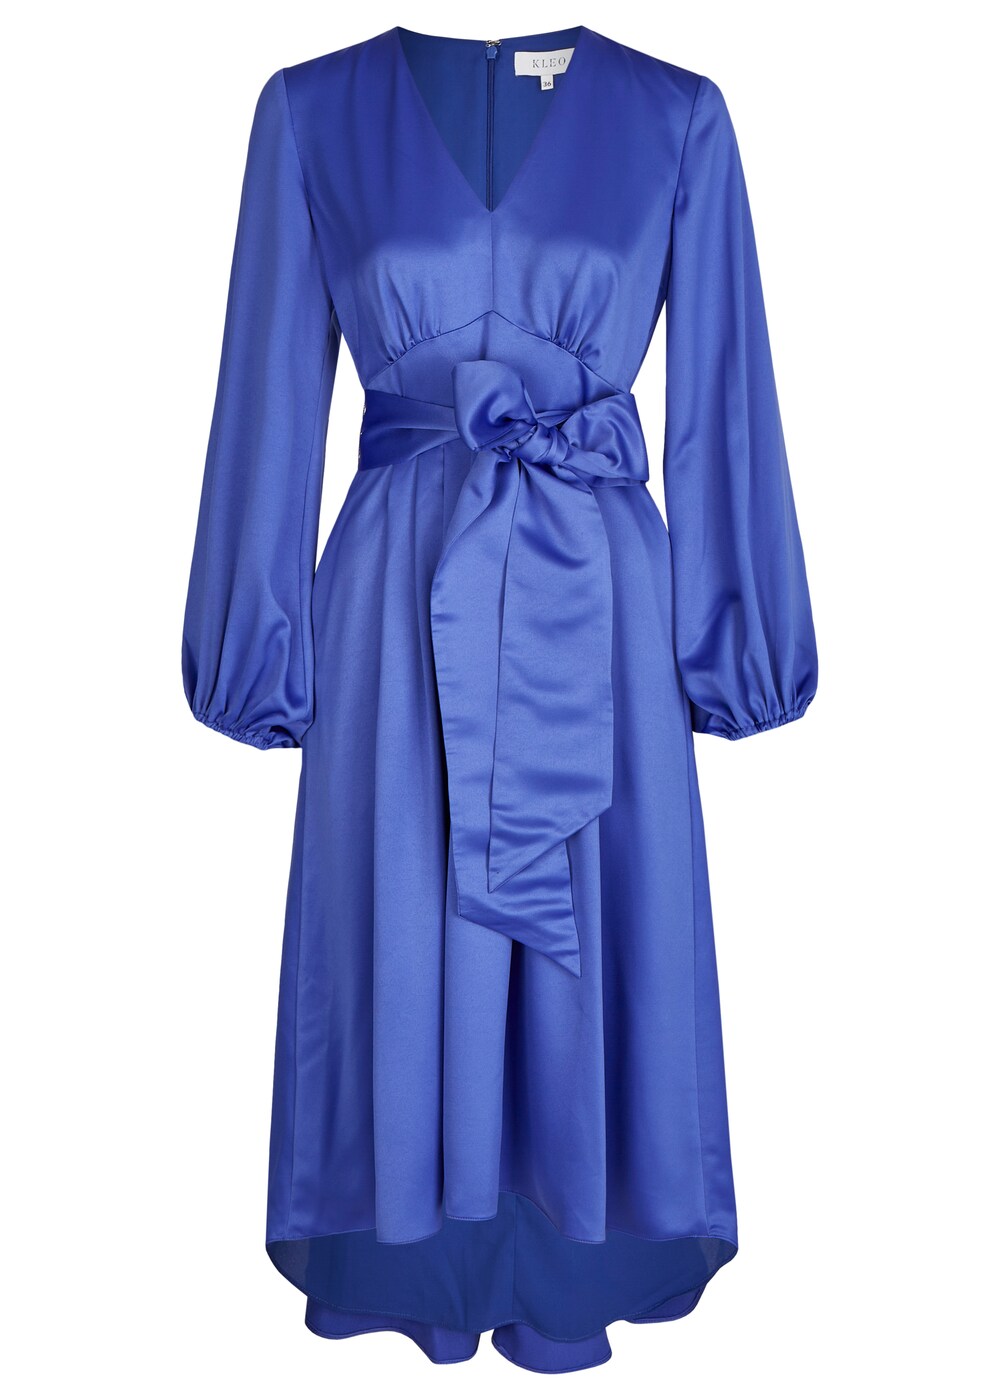 Вечернее платье KLEO, королевский синий